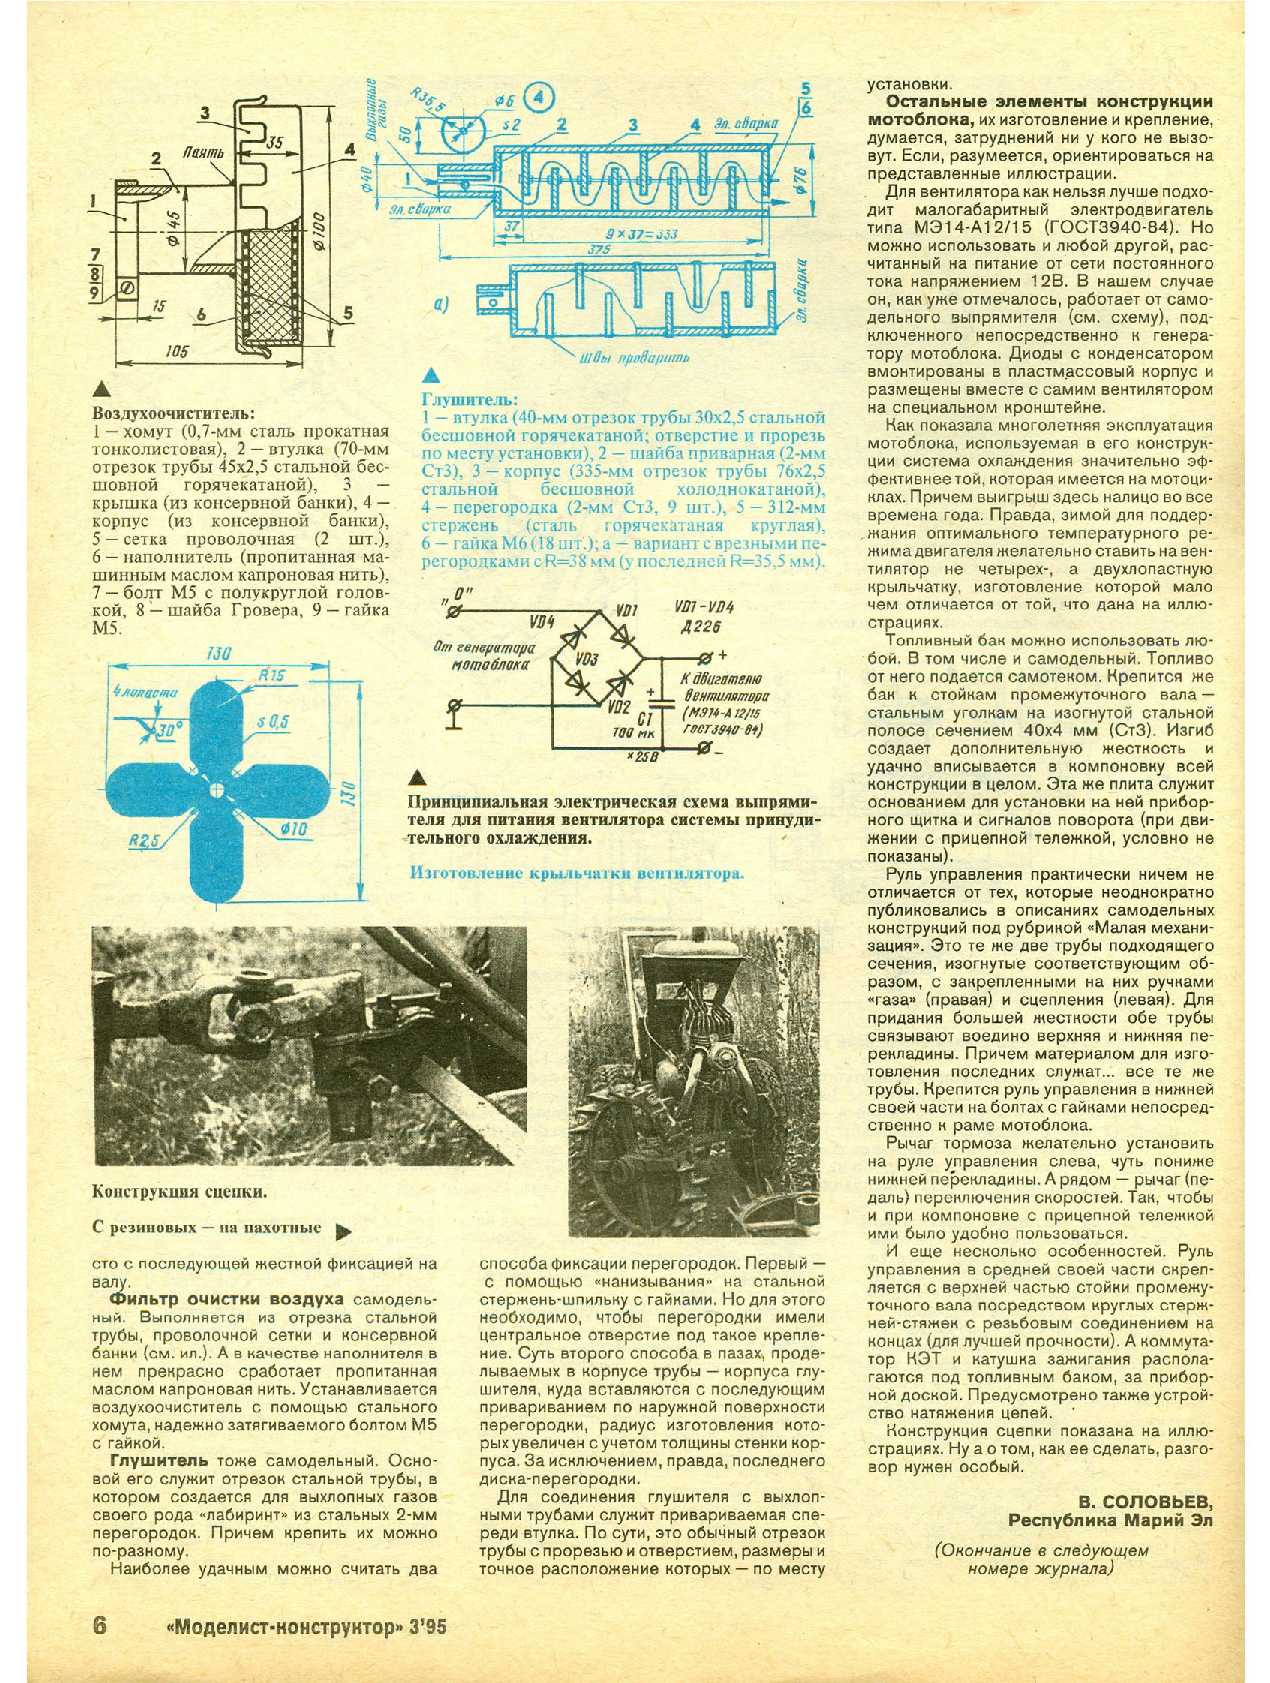 МК 3, 1995, 6 c.